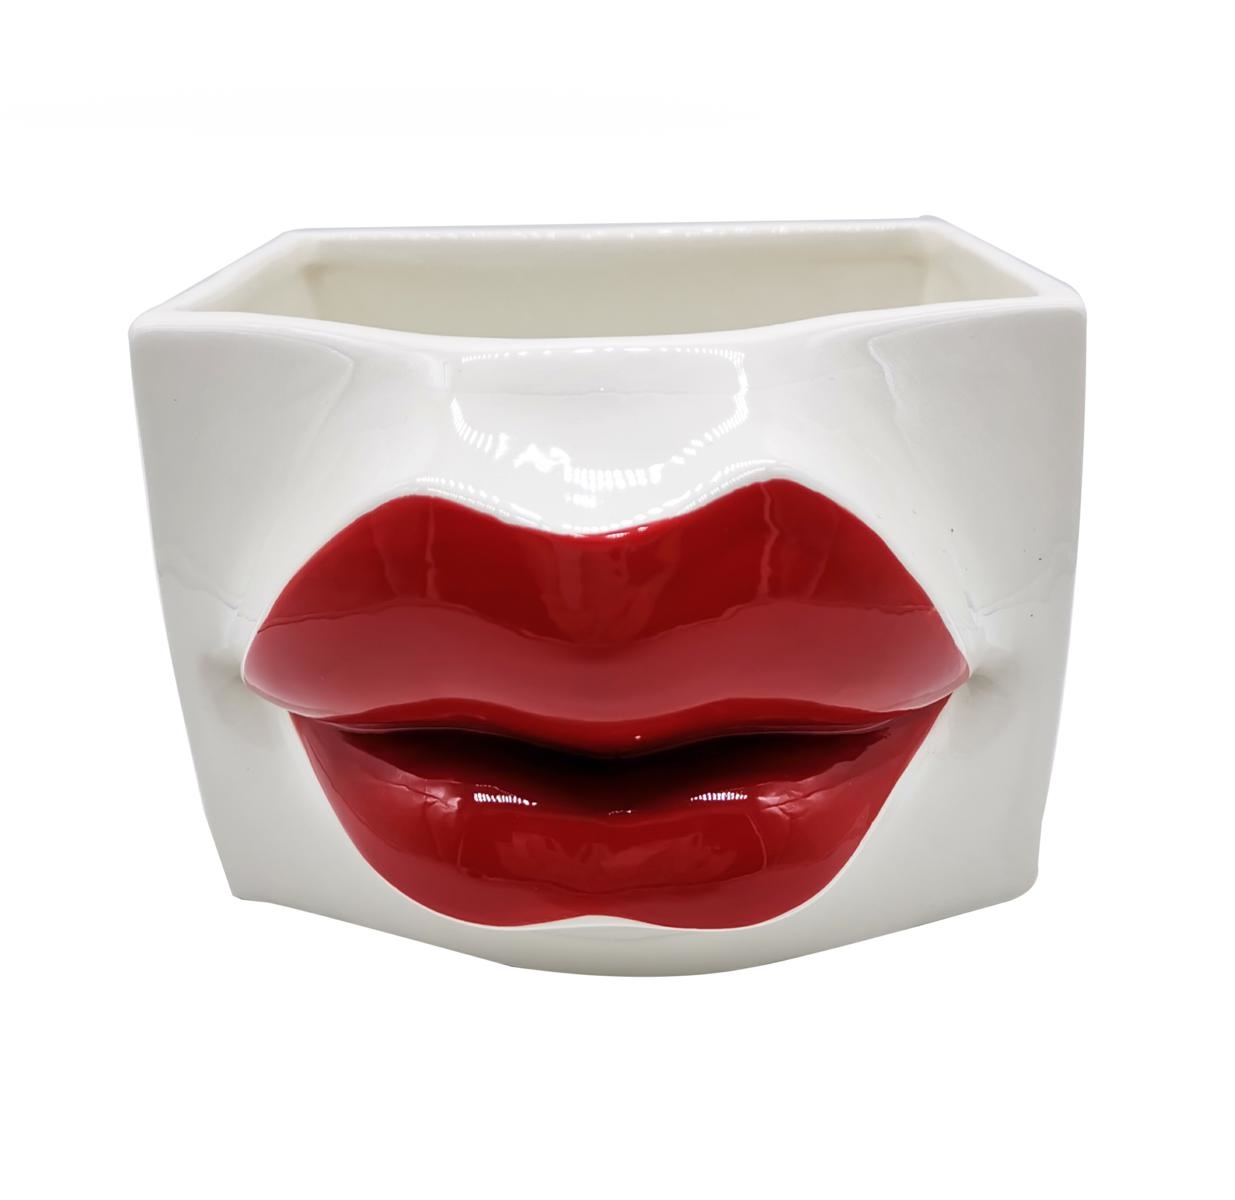 vaso ceramica labbra 16x16xh11.3